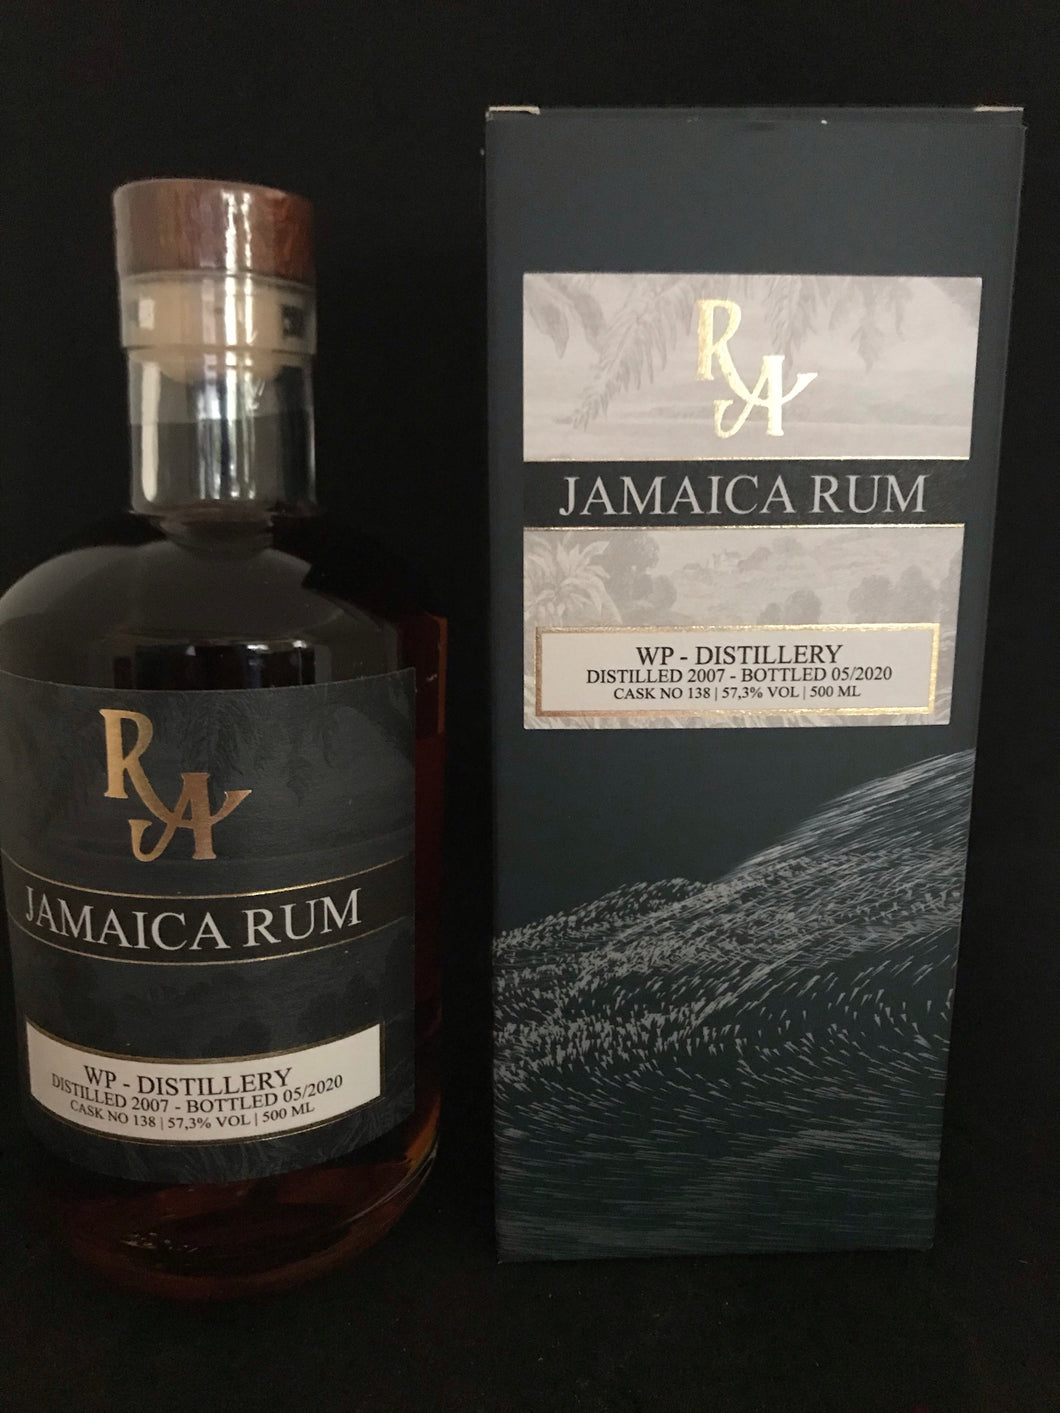 Rum Artesanal Jamaica Rum WP-Distillery 2007-2020, 57,3%Vol., Jamaica, 0,5l